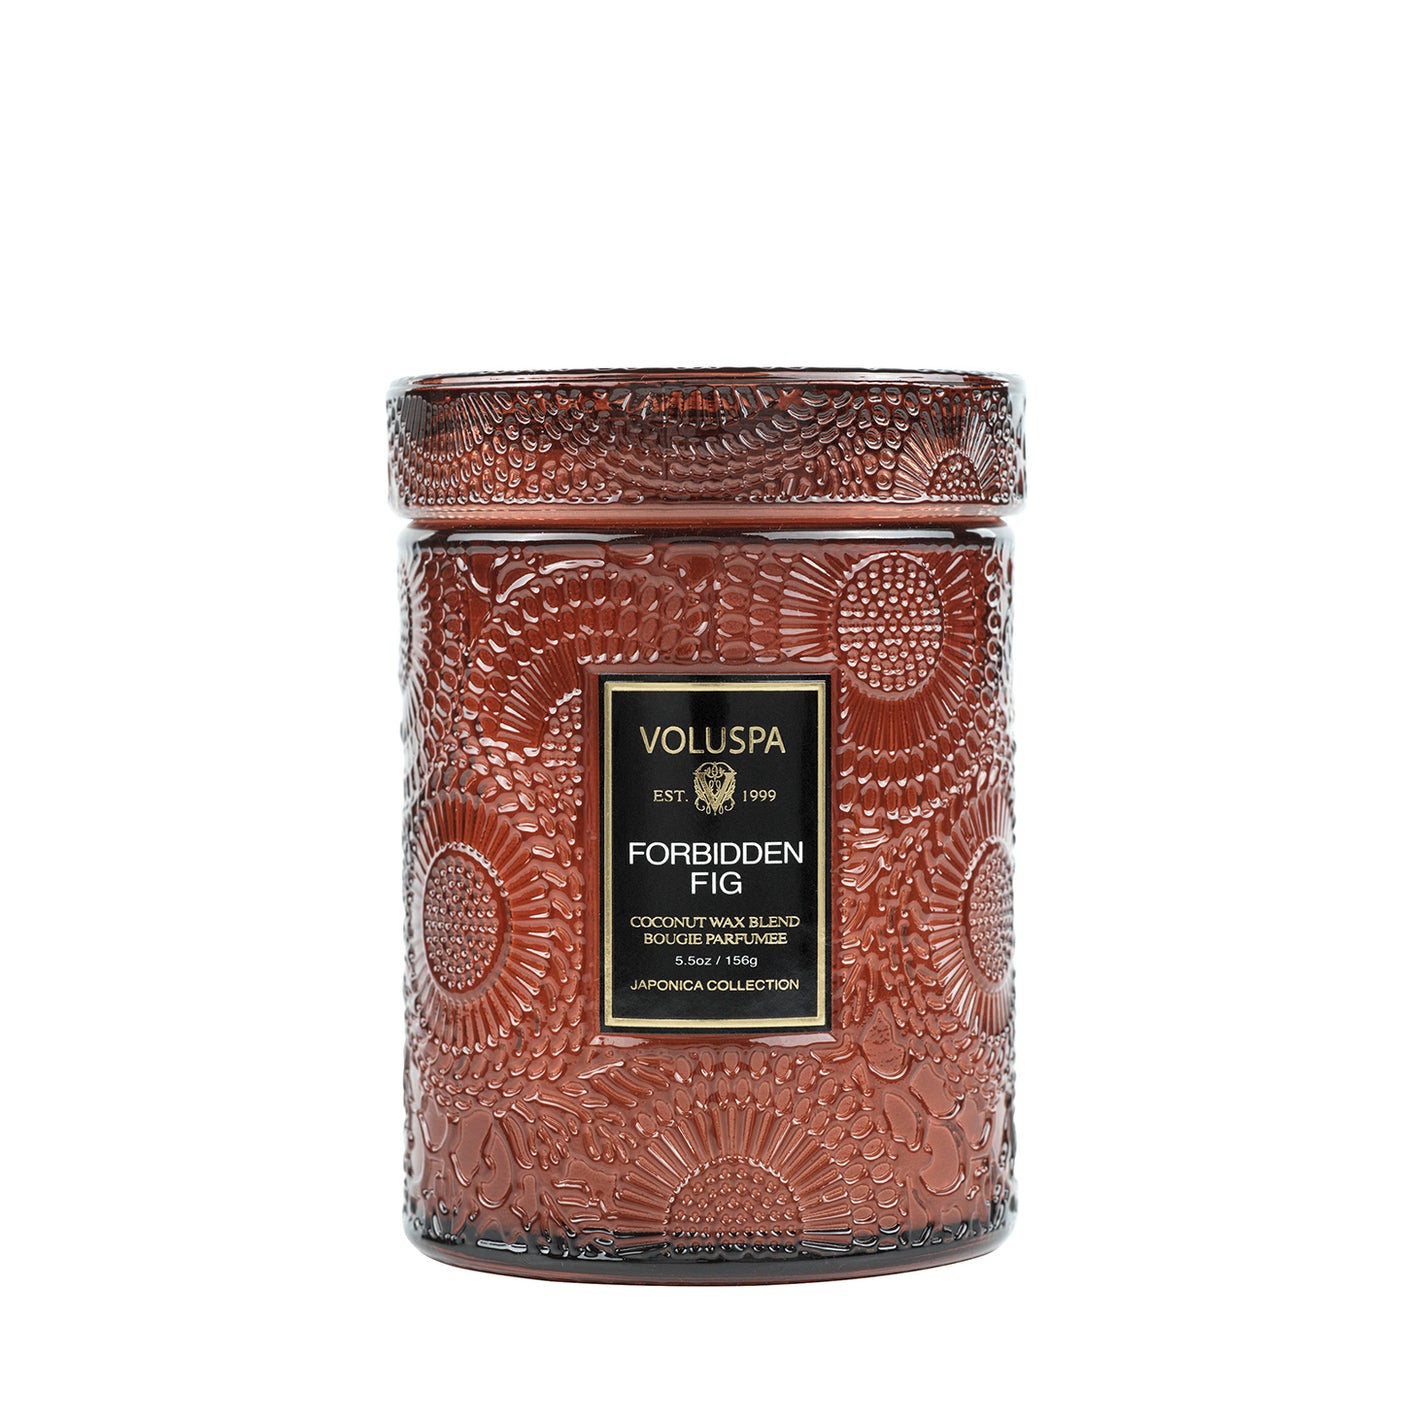 VOLUSPA Forbidden Fig 50hr Candle Jar